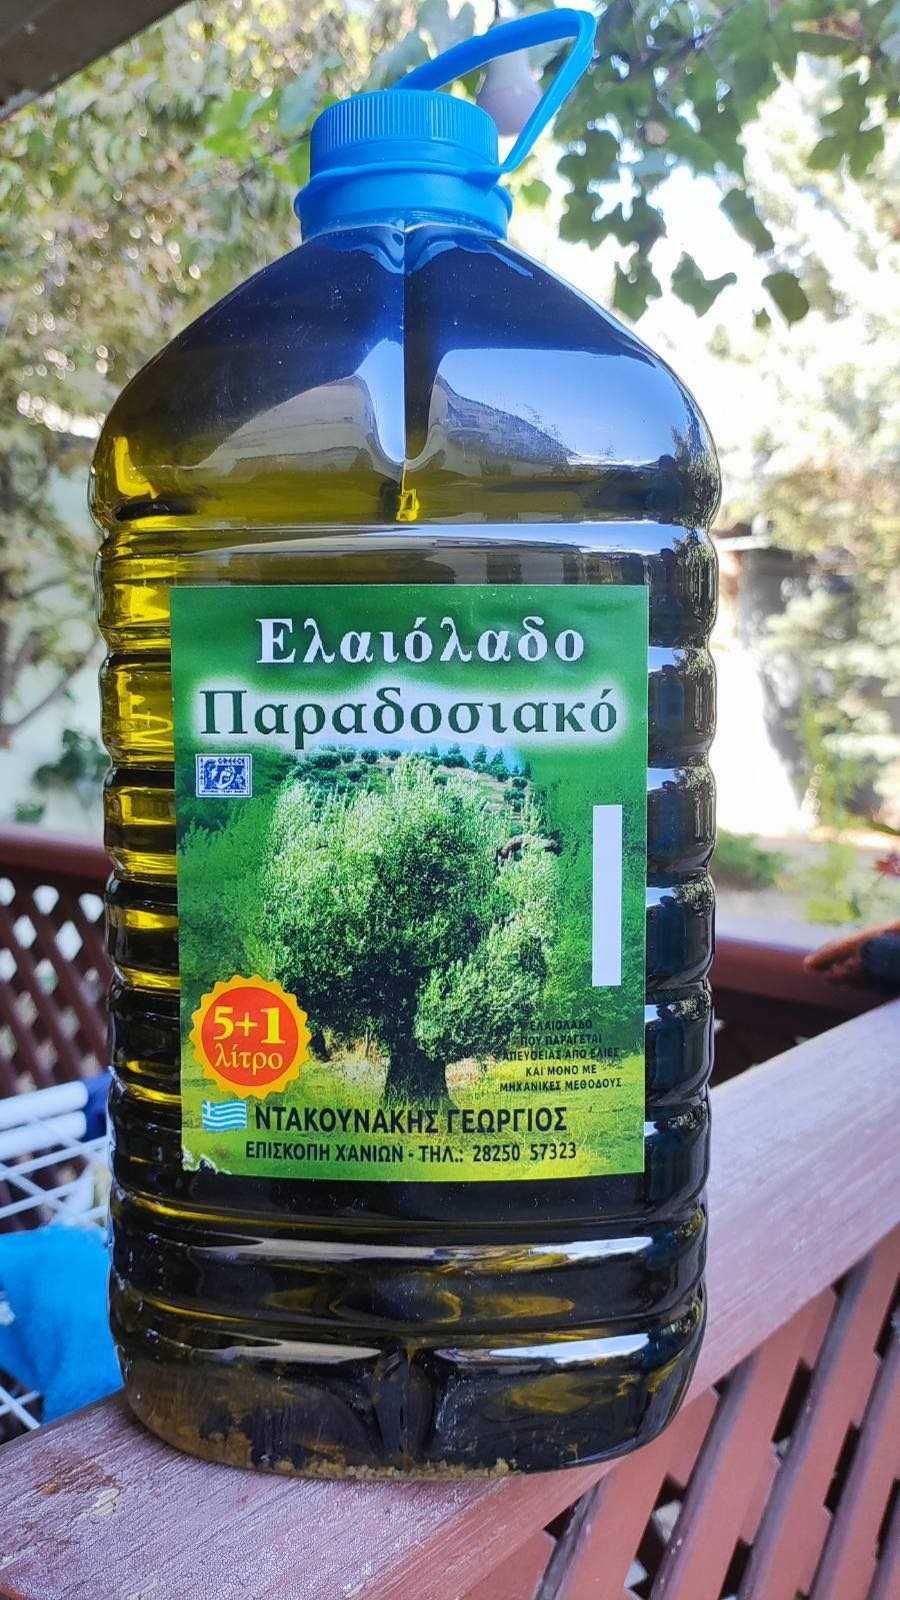 1л / Грецька оливкова олія з кусочками оливок / Оливковое масло Греция